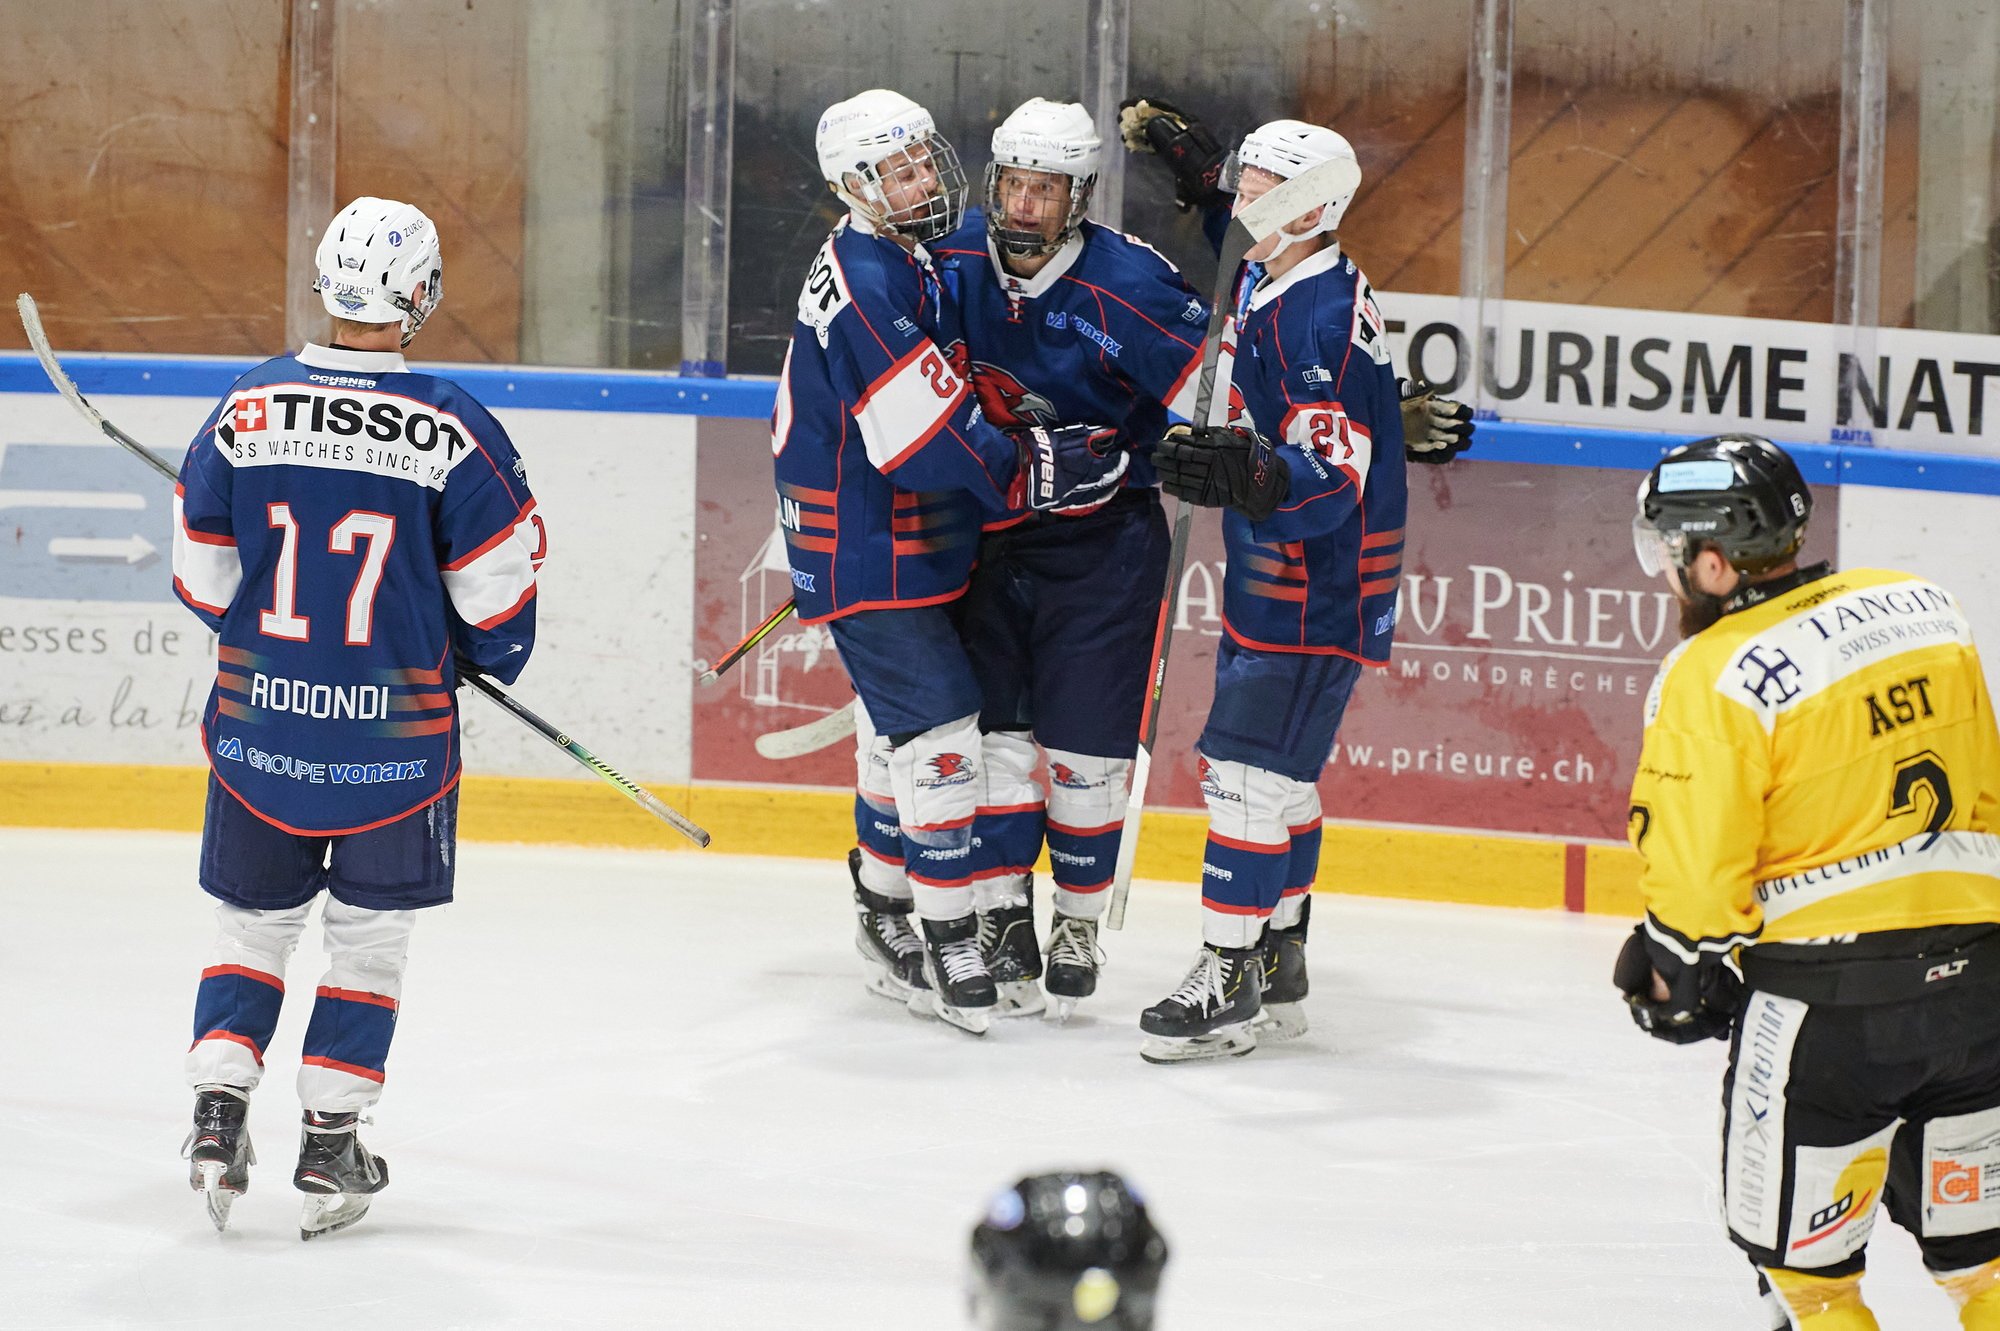 Le HC Université Neuchâtel enchaîne avec une deuxième victoire en championnat.